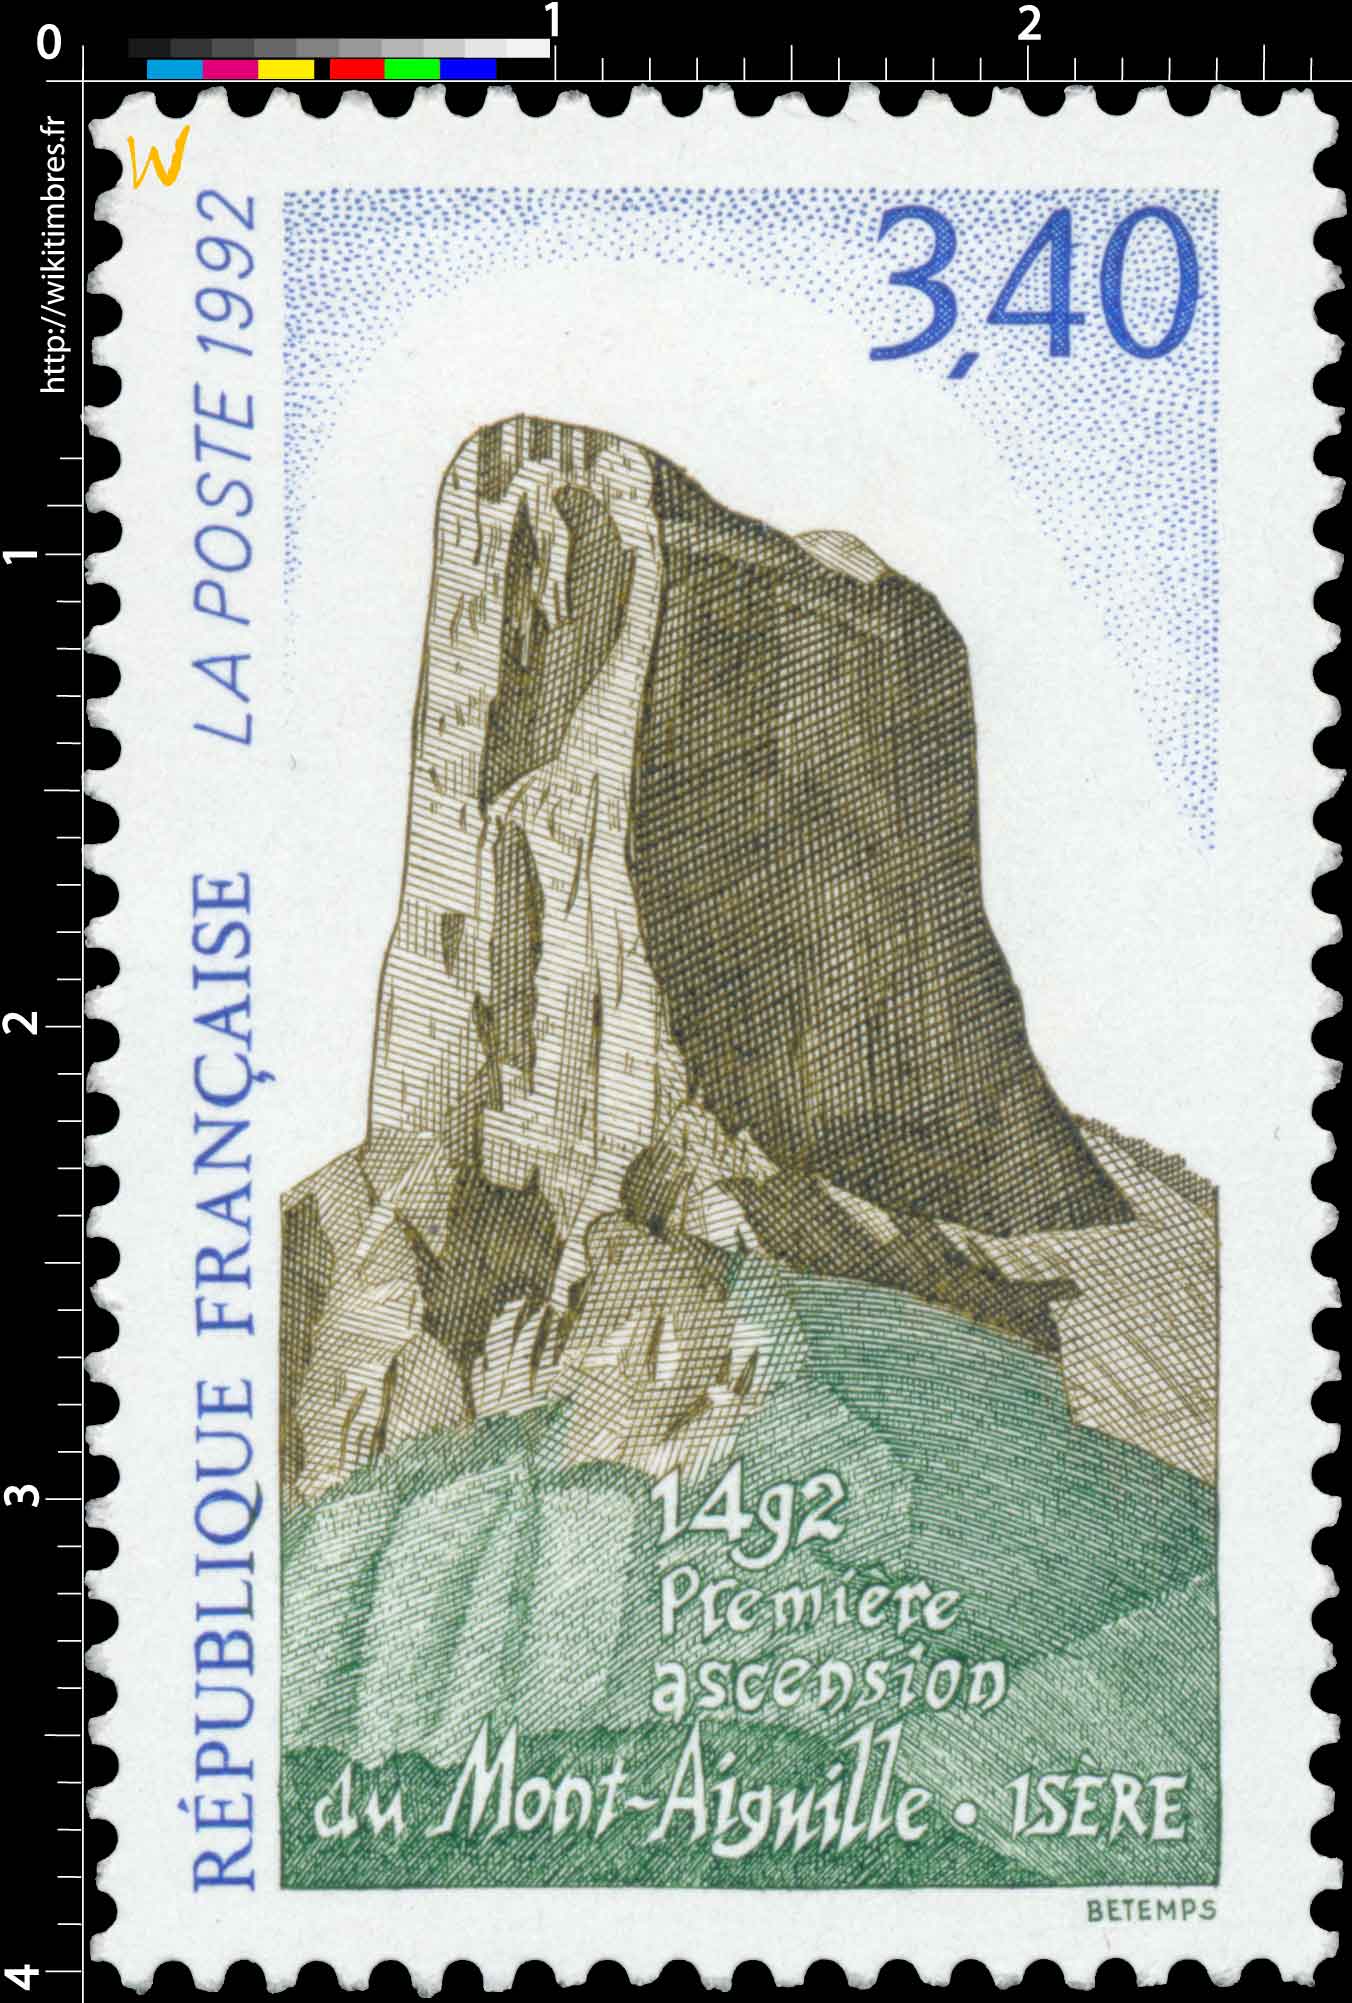 1992 Première ascension du Mont-Aiguille. Isère 1492